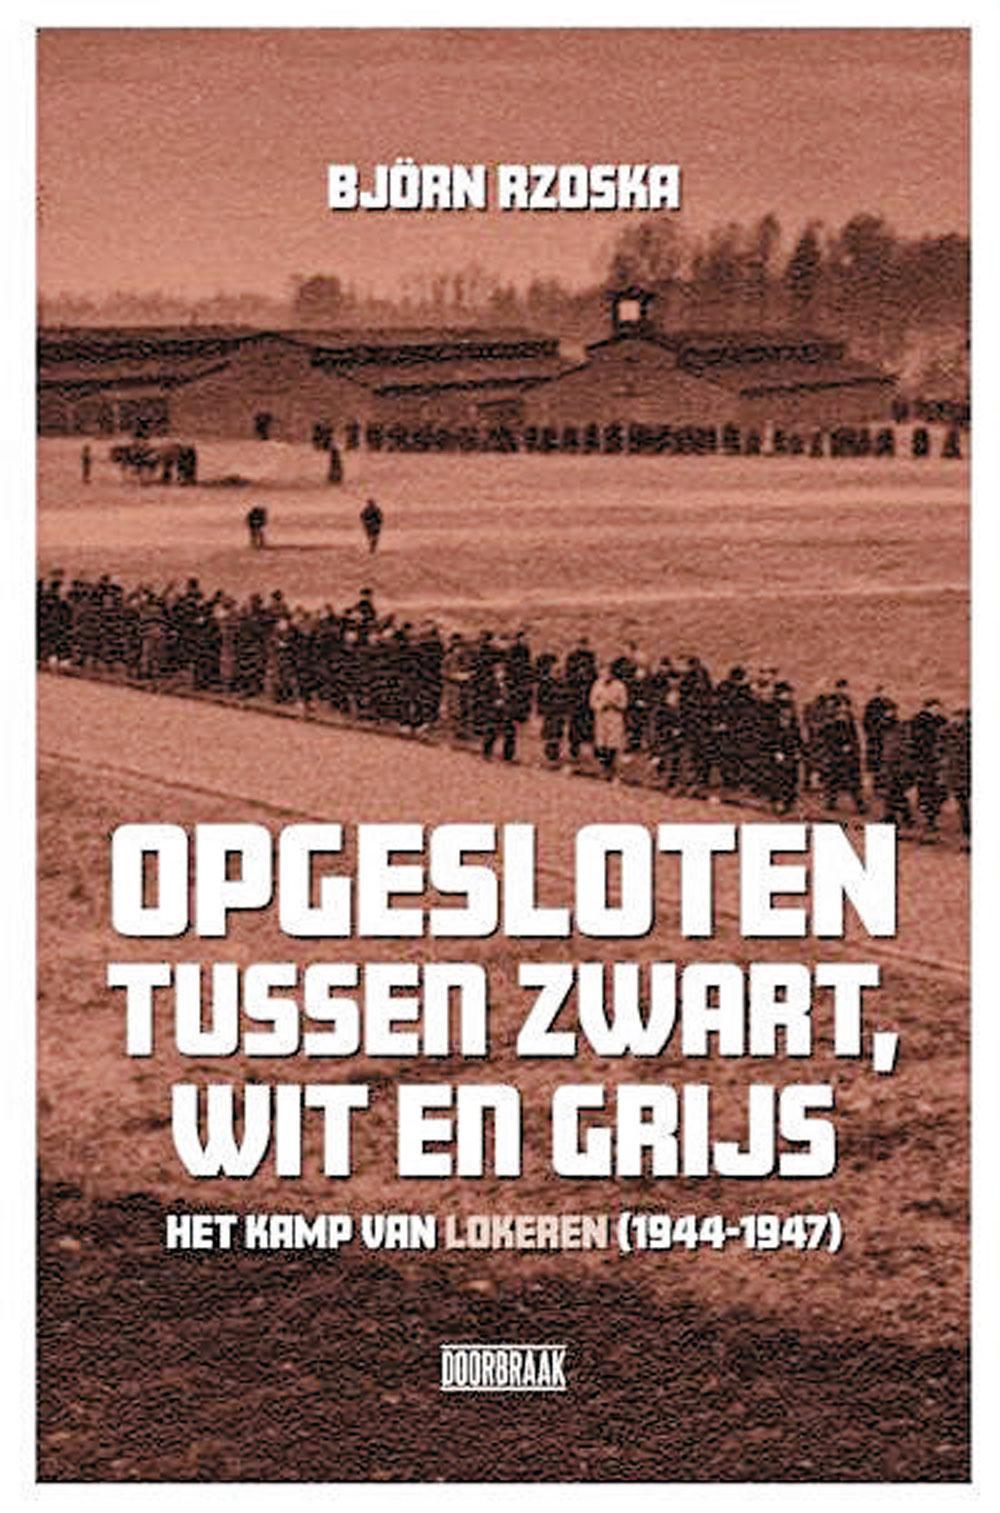 Het boek Opgesloten tussen zwart, wit en grijs. Het kamp van Lokeren (1944-1947) van Björn Rzoska (Uitgeverij Doorbraak) wordt voorgesteld op 9 maart in Lokeren. Diezelfde dag is er ook een colloquium over het thema. Meer info op www.Doorbraak.be